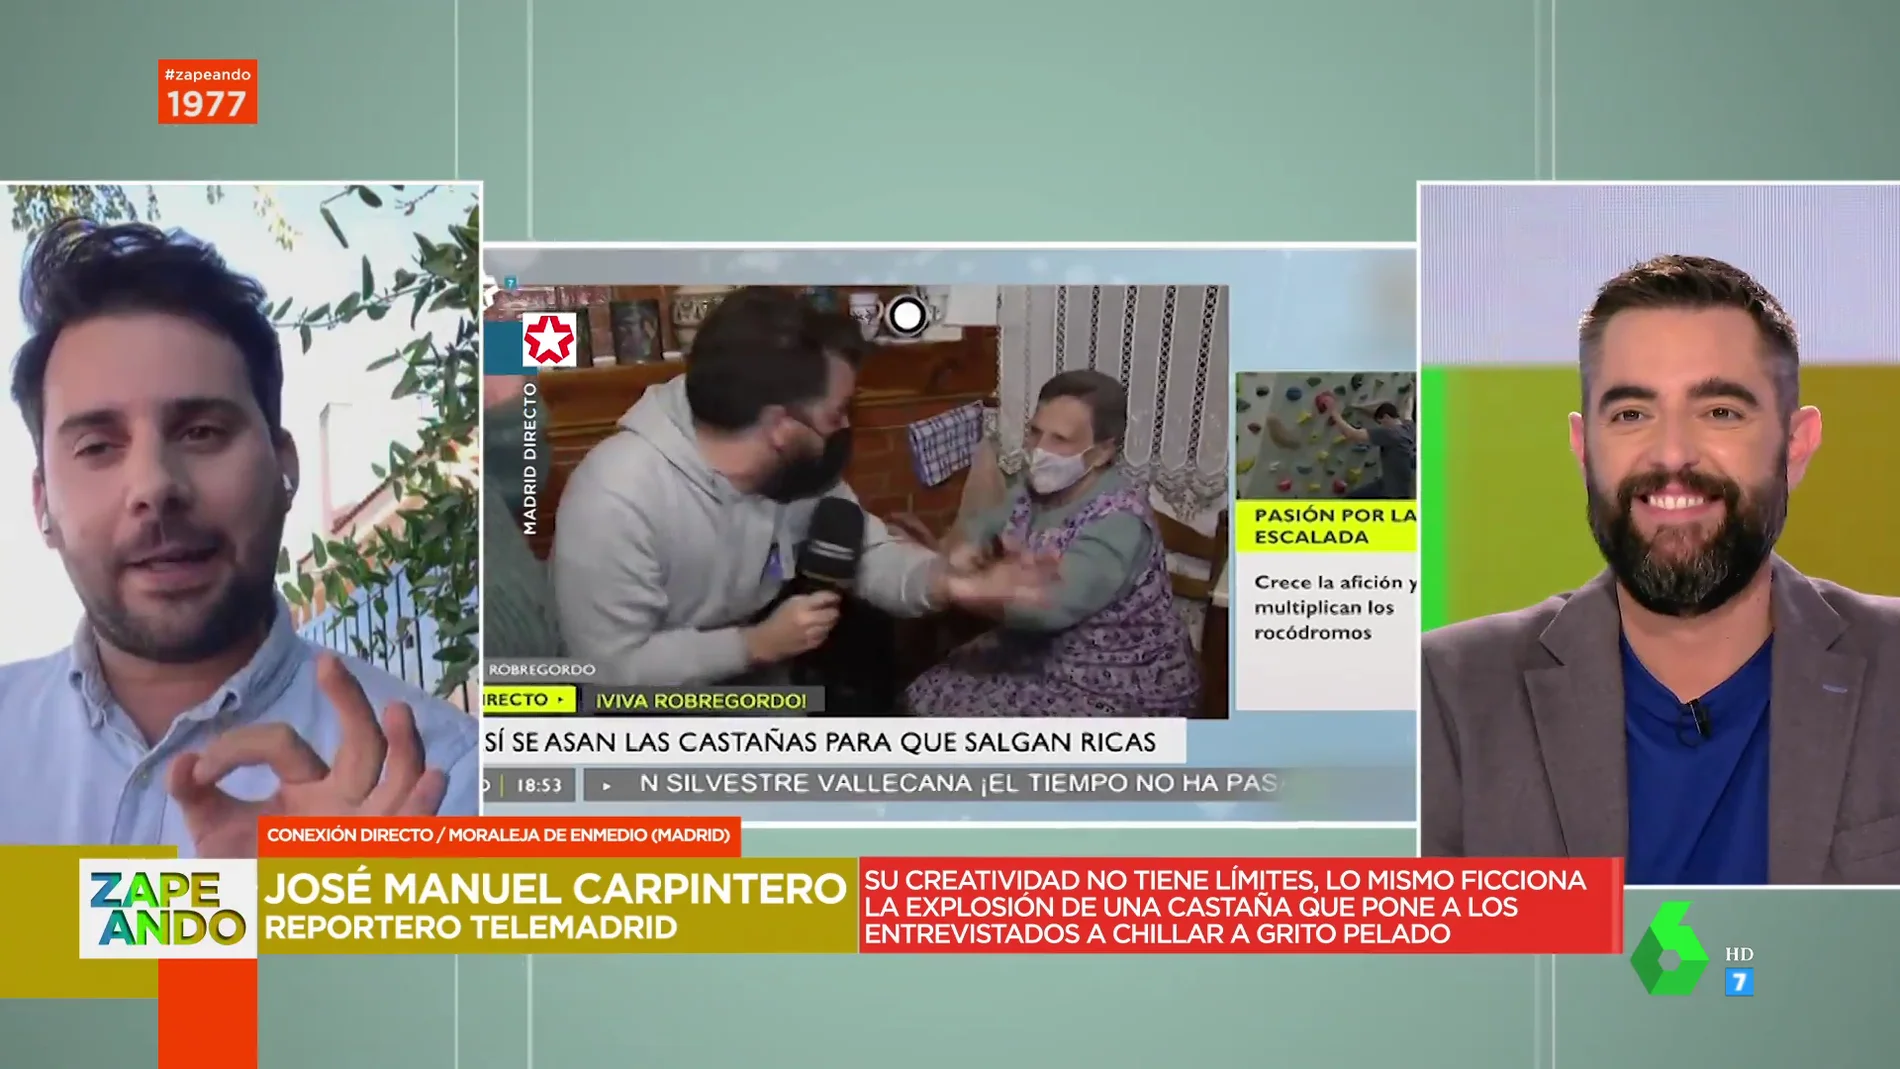 José Manuel Carpintero, el reportero de Telemadrid que cautiva las redes sociales: "Busco montar un show"